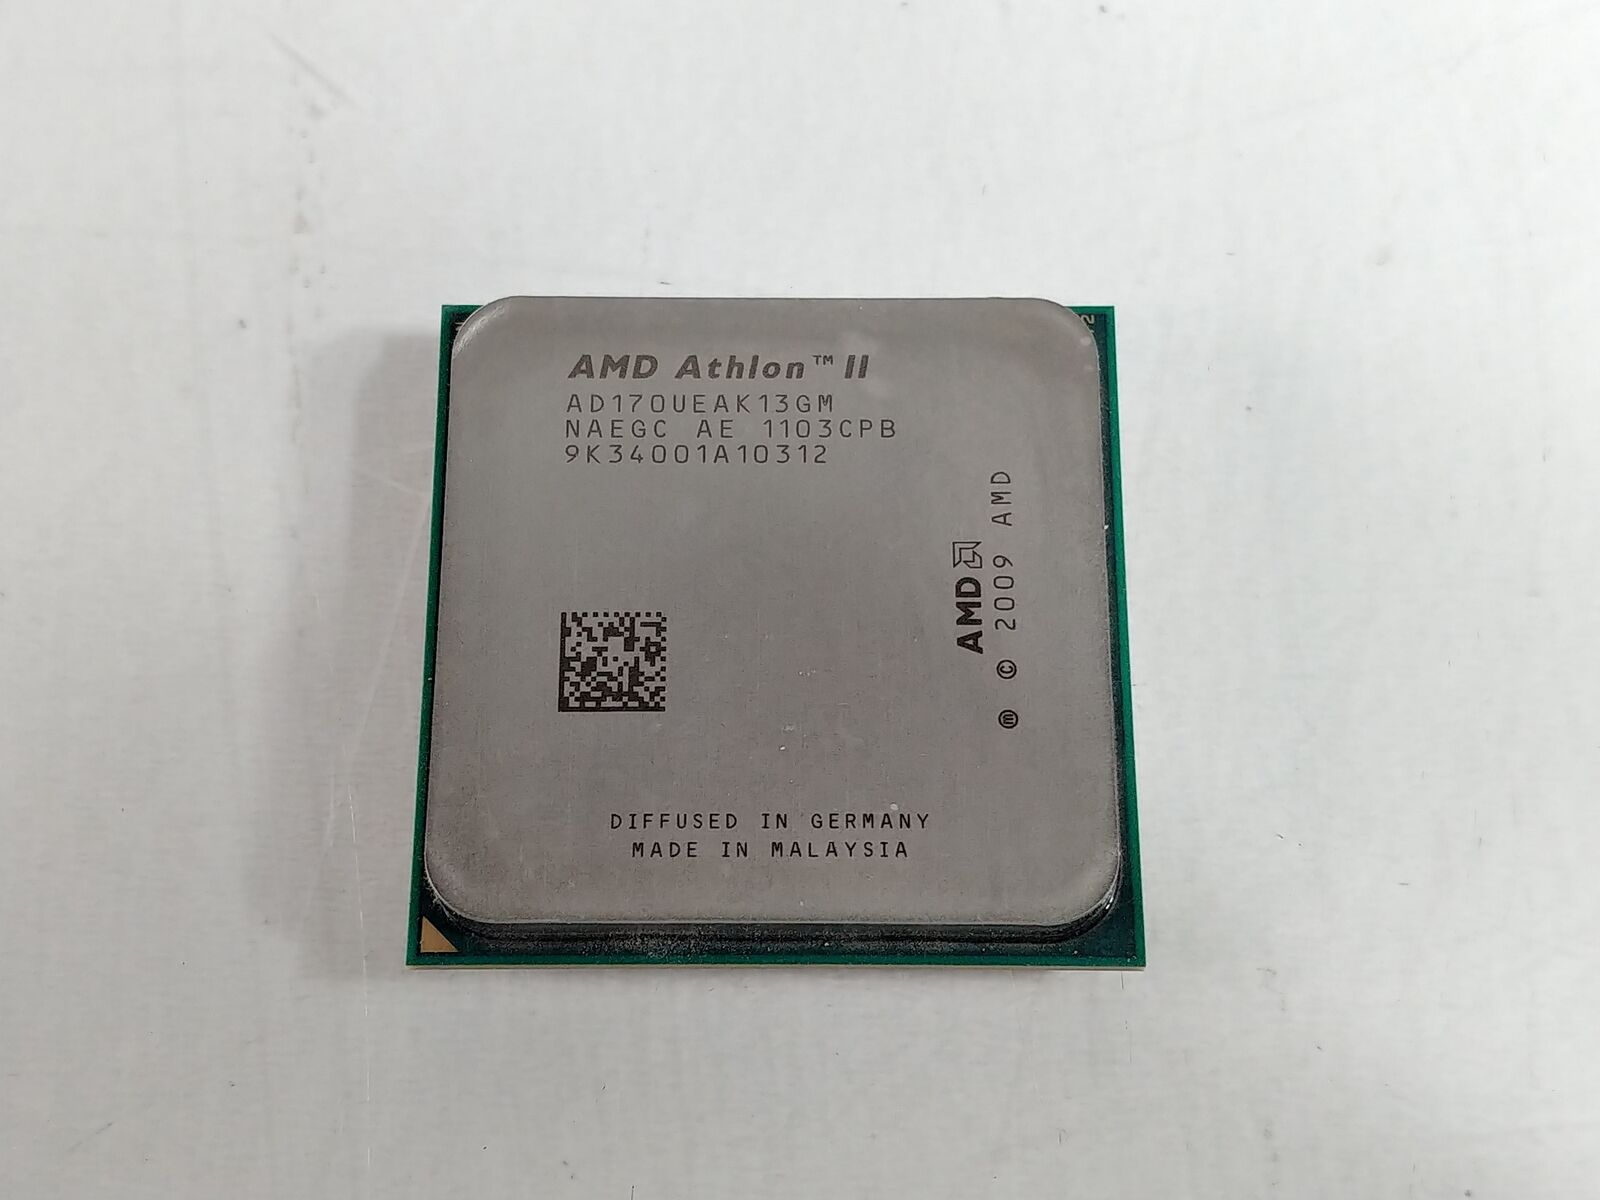 AMD Athlon II 170u 2.0 GHz Socket AM3  CPU Processor AD170UEAK13GM